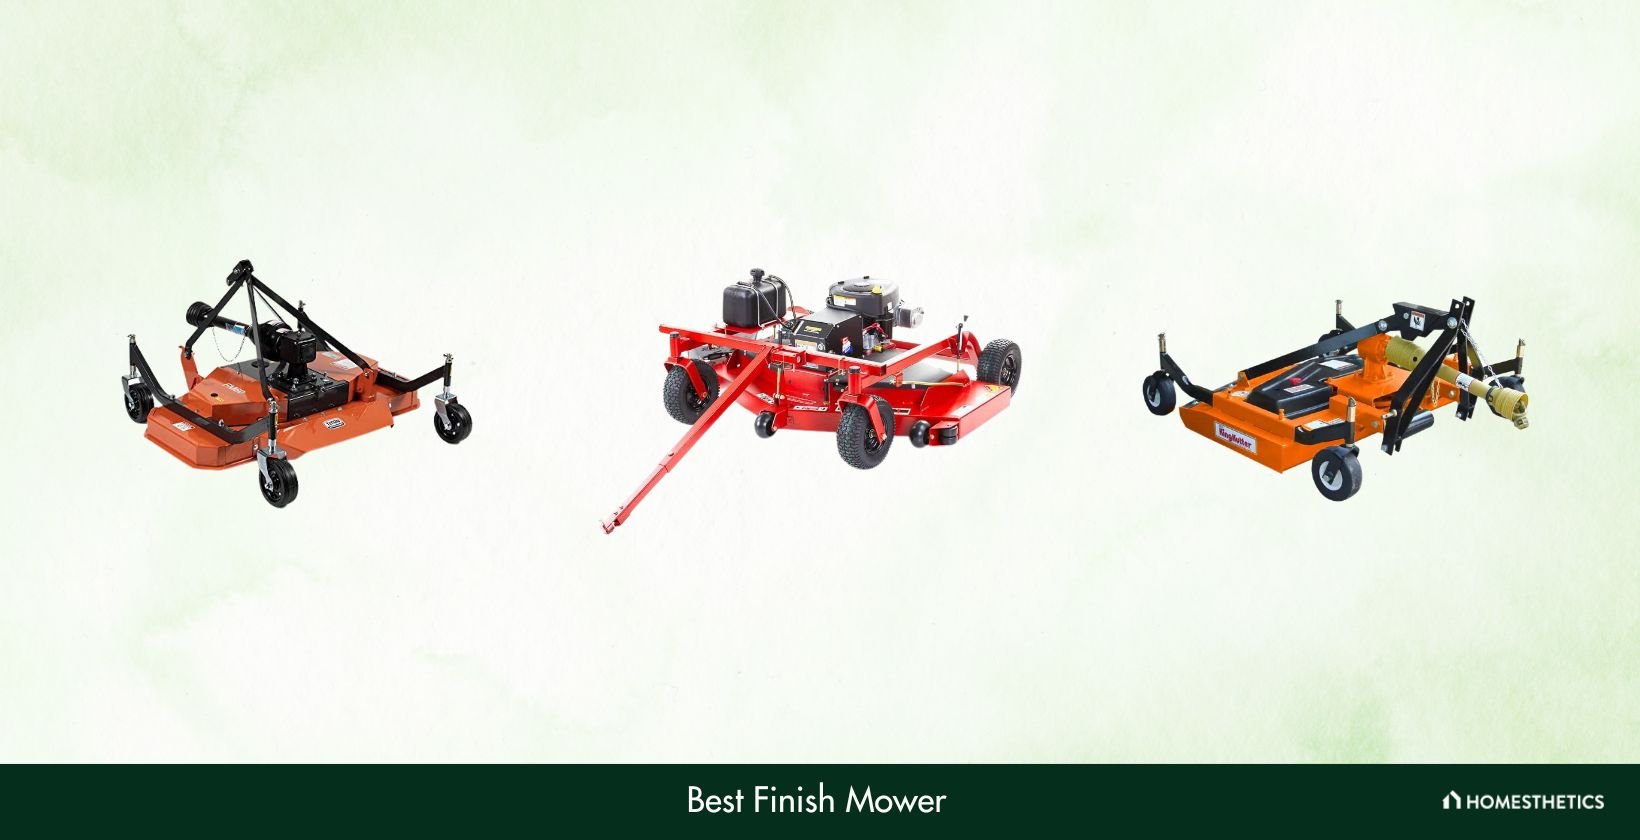 Best Finish Mower